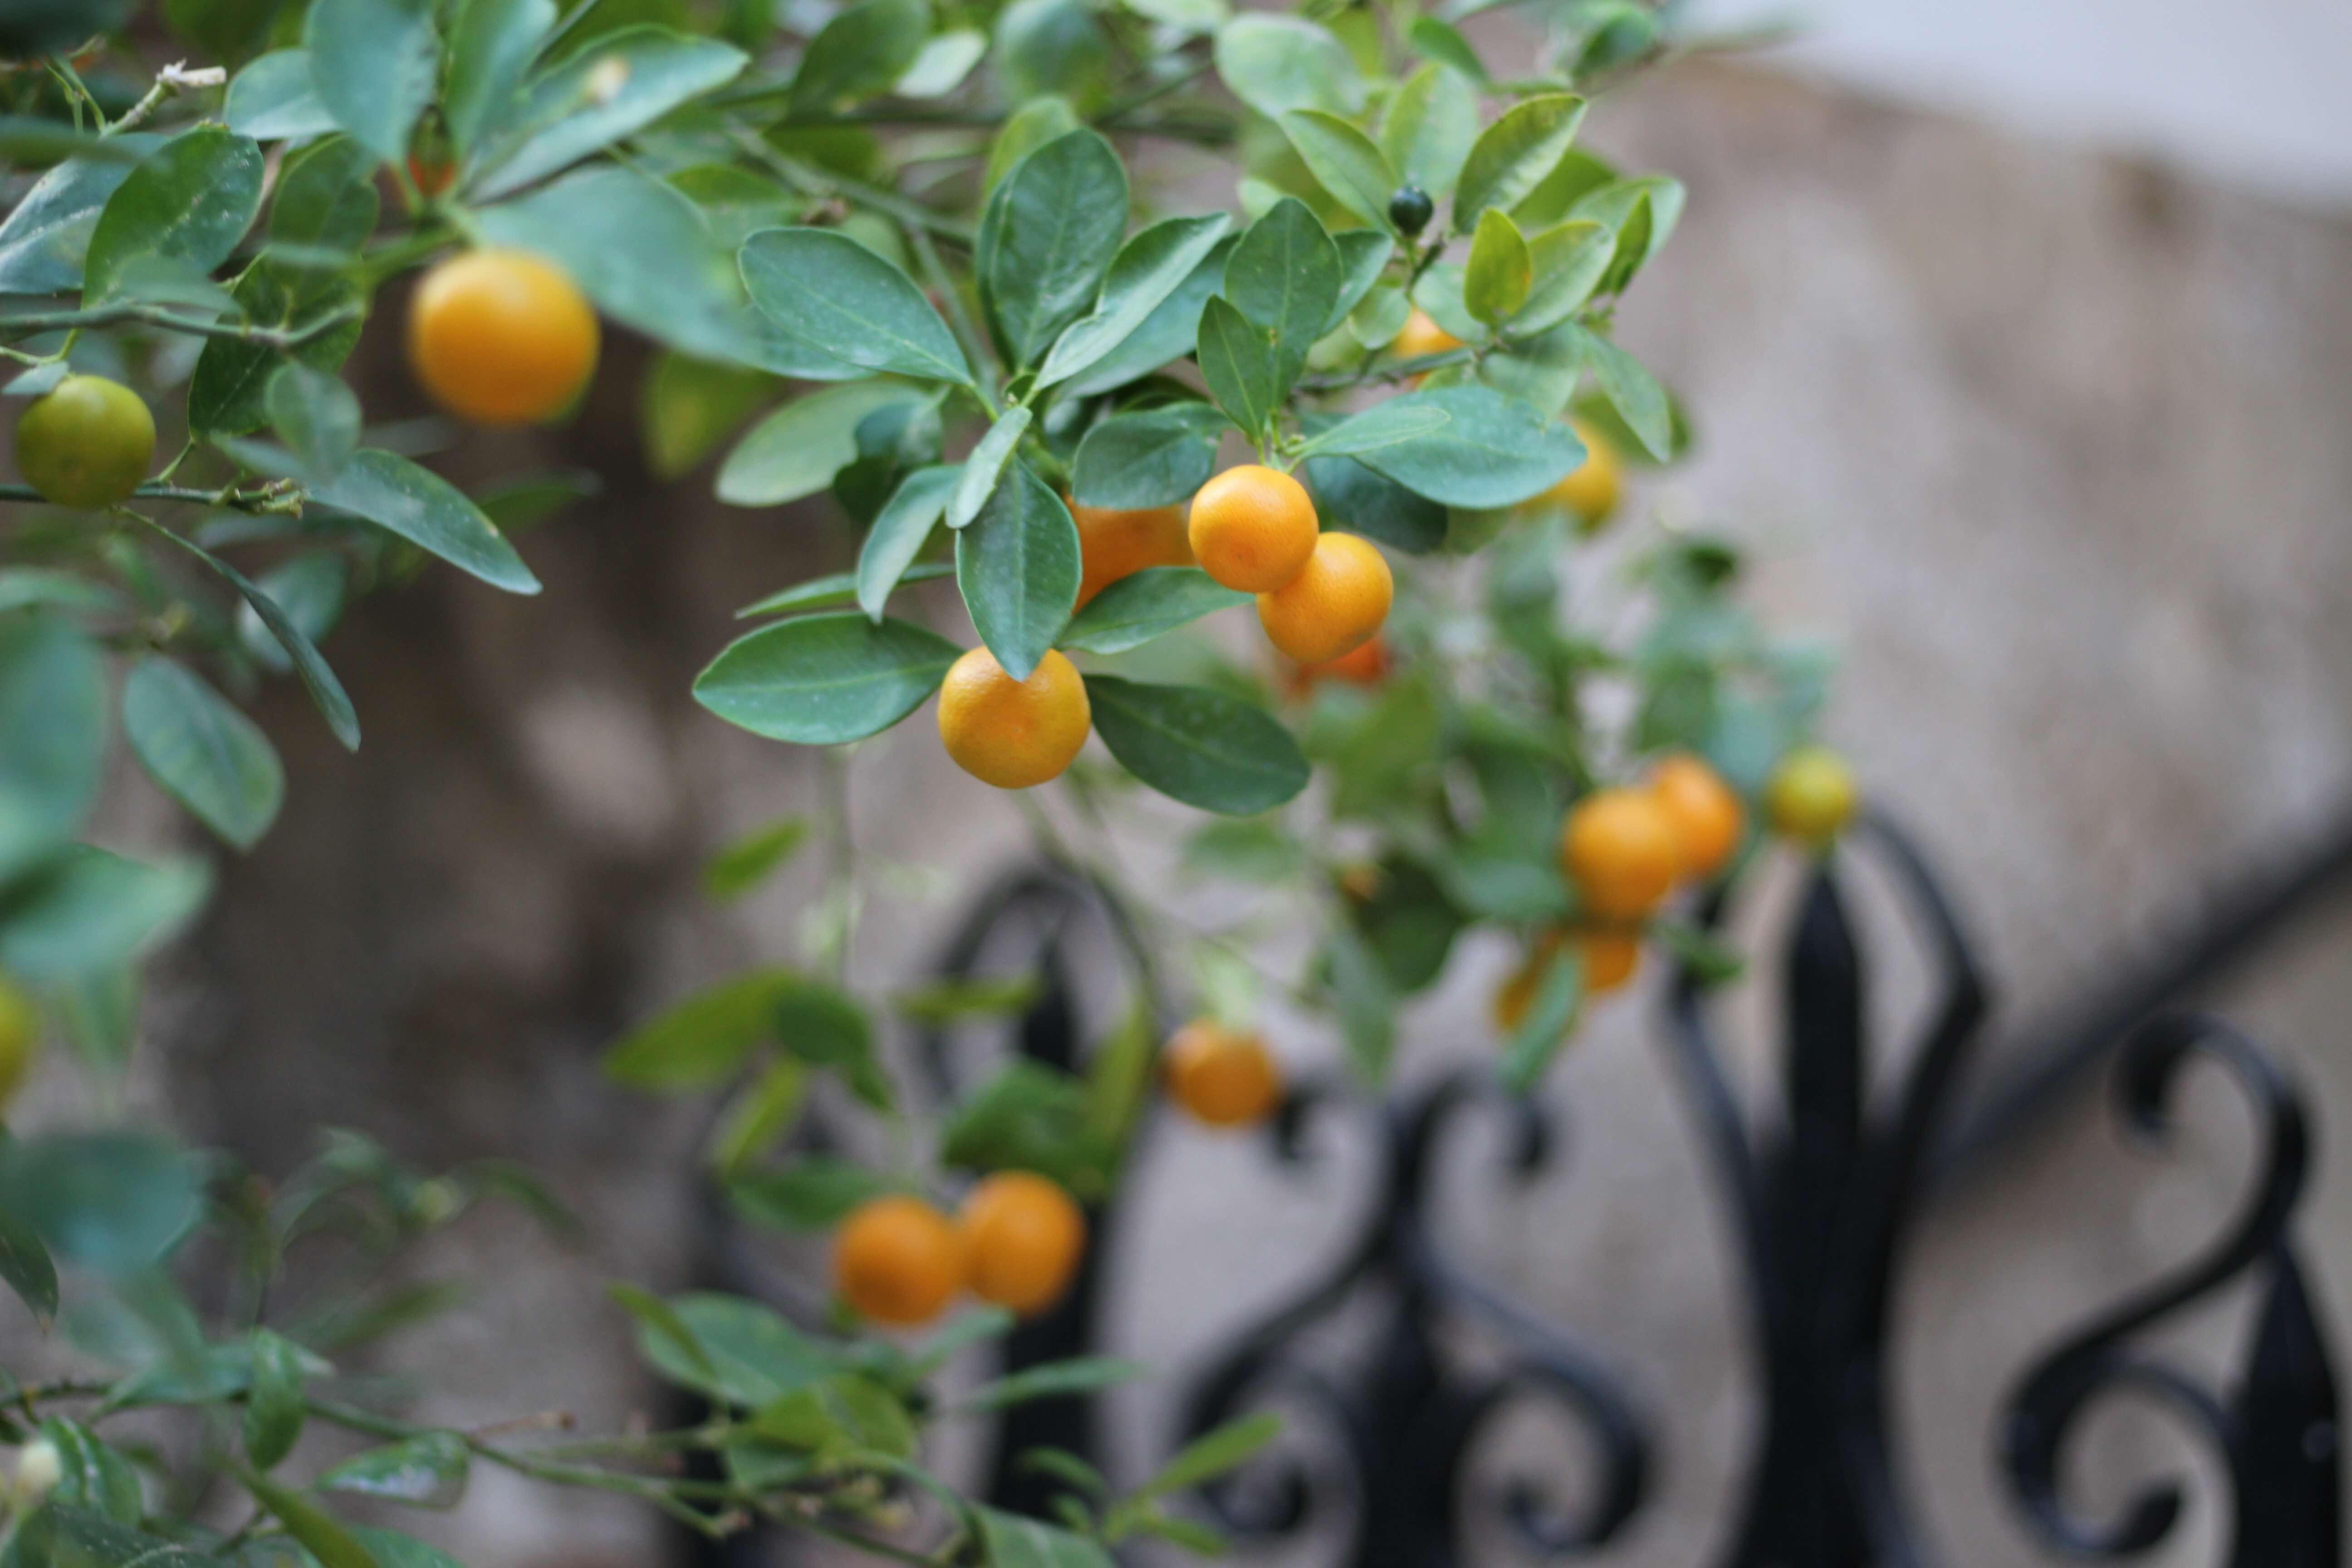 oranges are part of the mediterranean diet plan